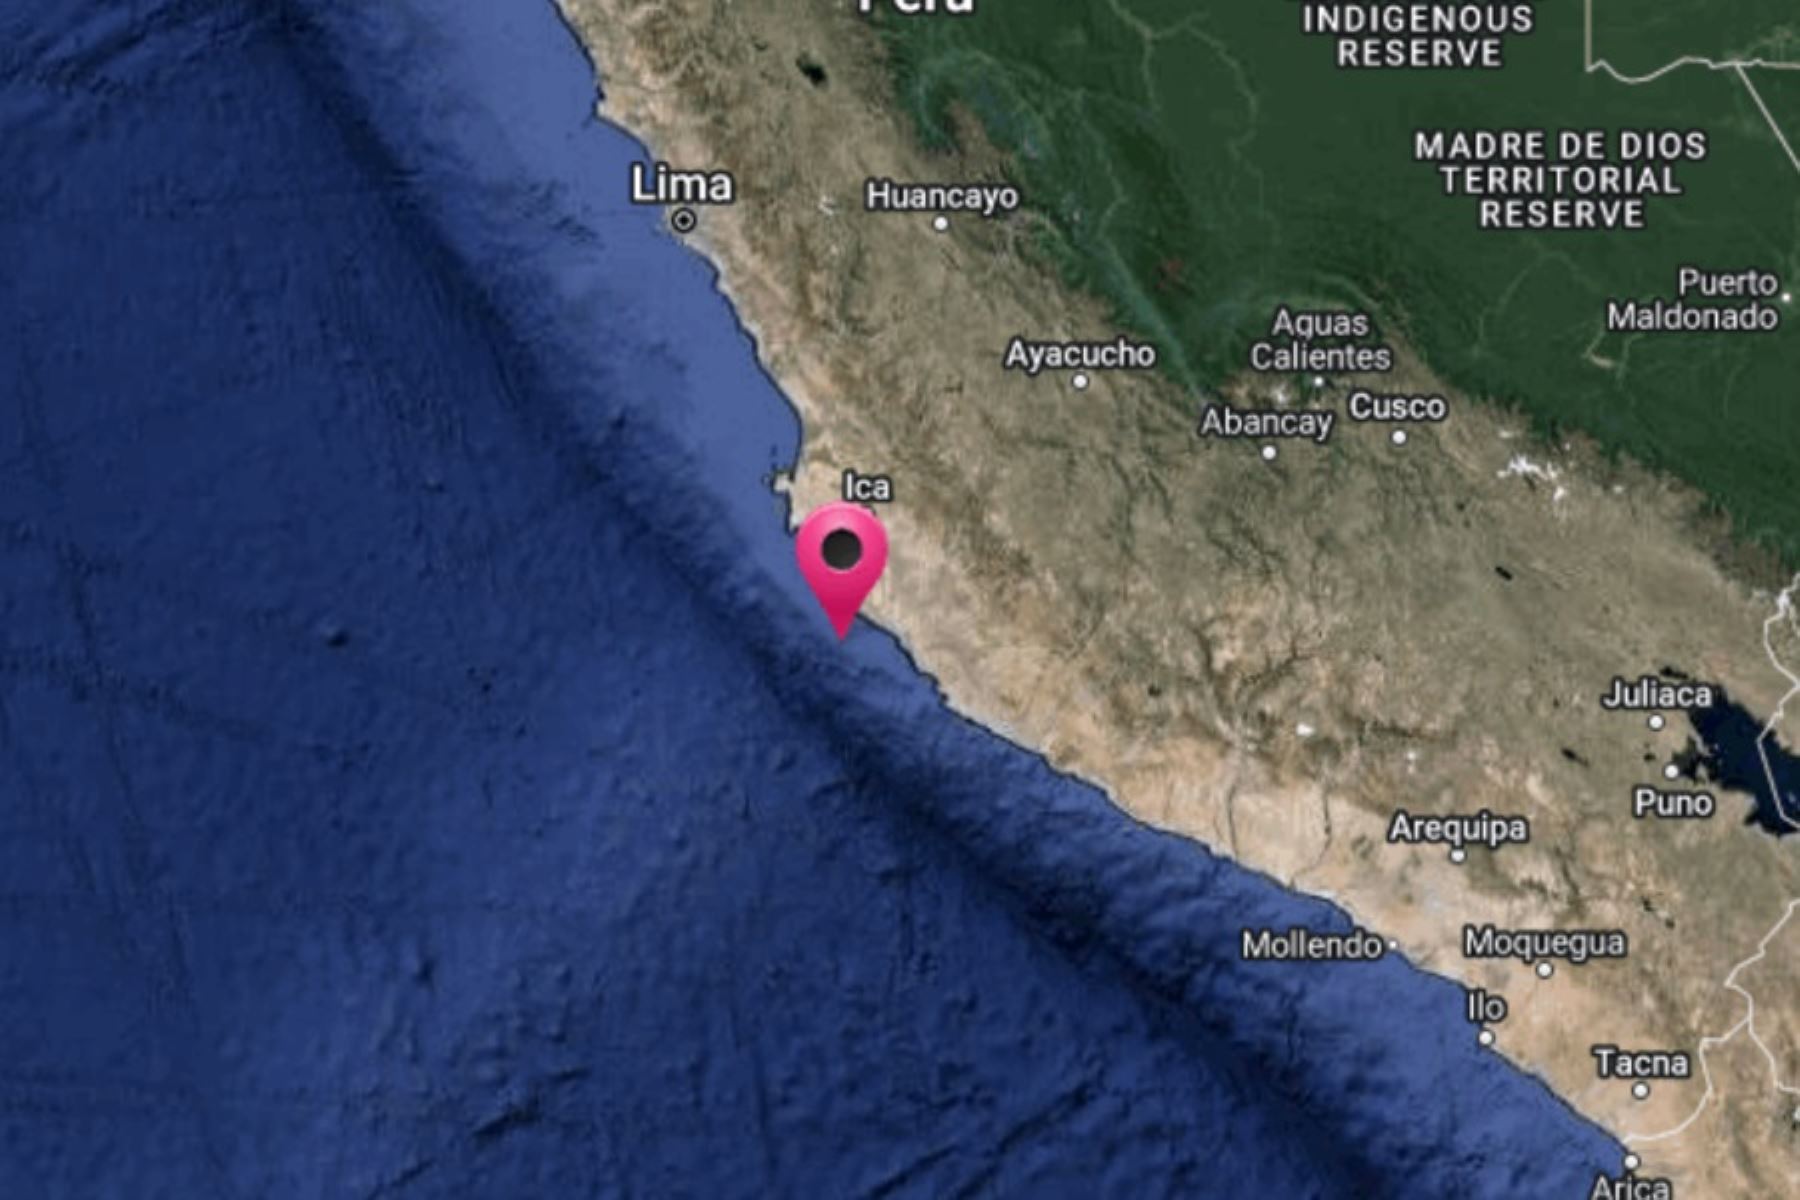 Un temblor de magnitud 4.4 y una profundidad de 31 kilómetros se registró esta mañana en la región Piura, reportó el Centro Sismológico Nacional del Instituto Geofísico del Perú